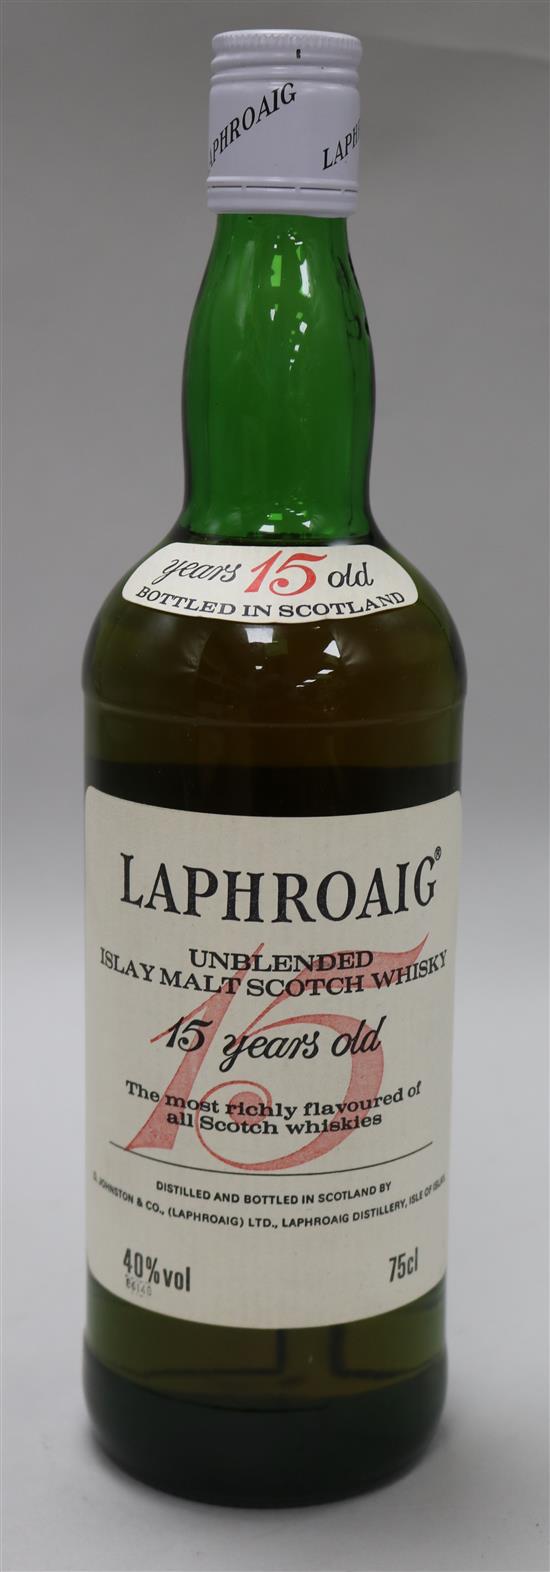 One bottle of Laphroaig unblended 15 year old Islay malt whisky